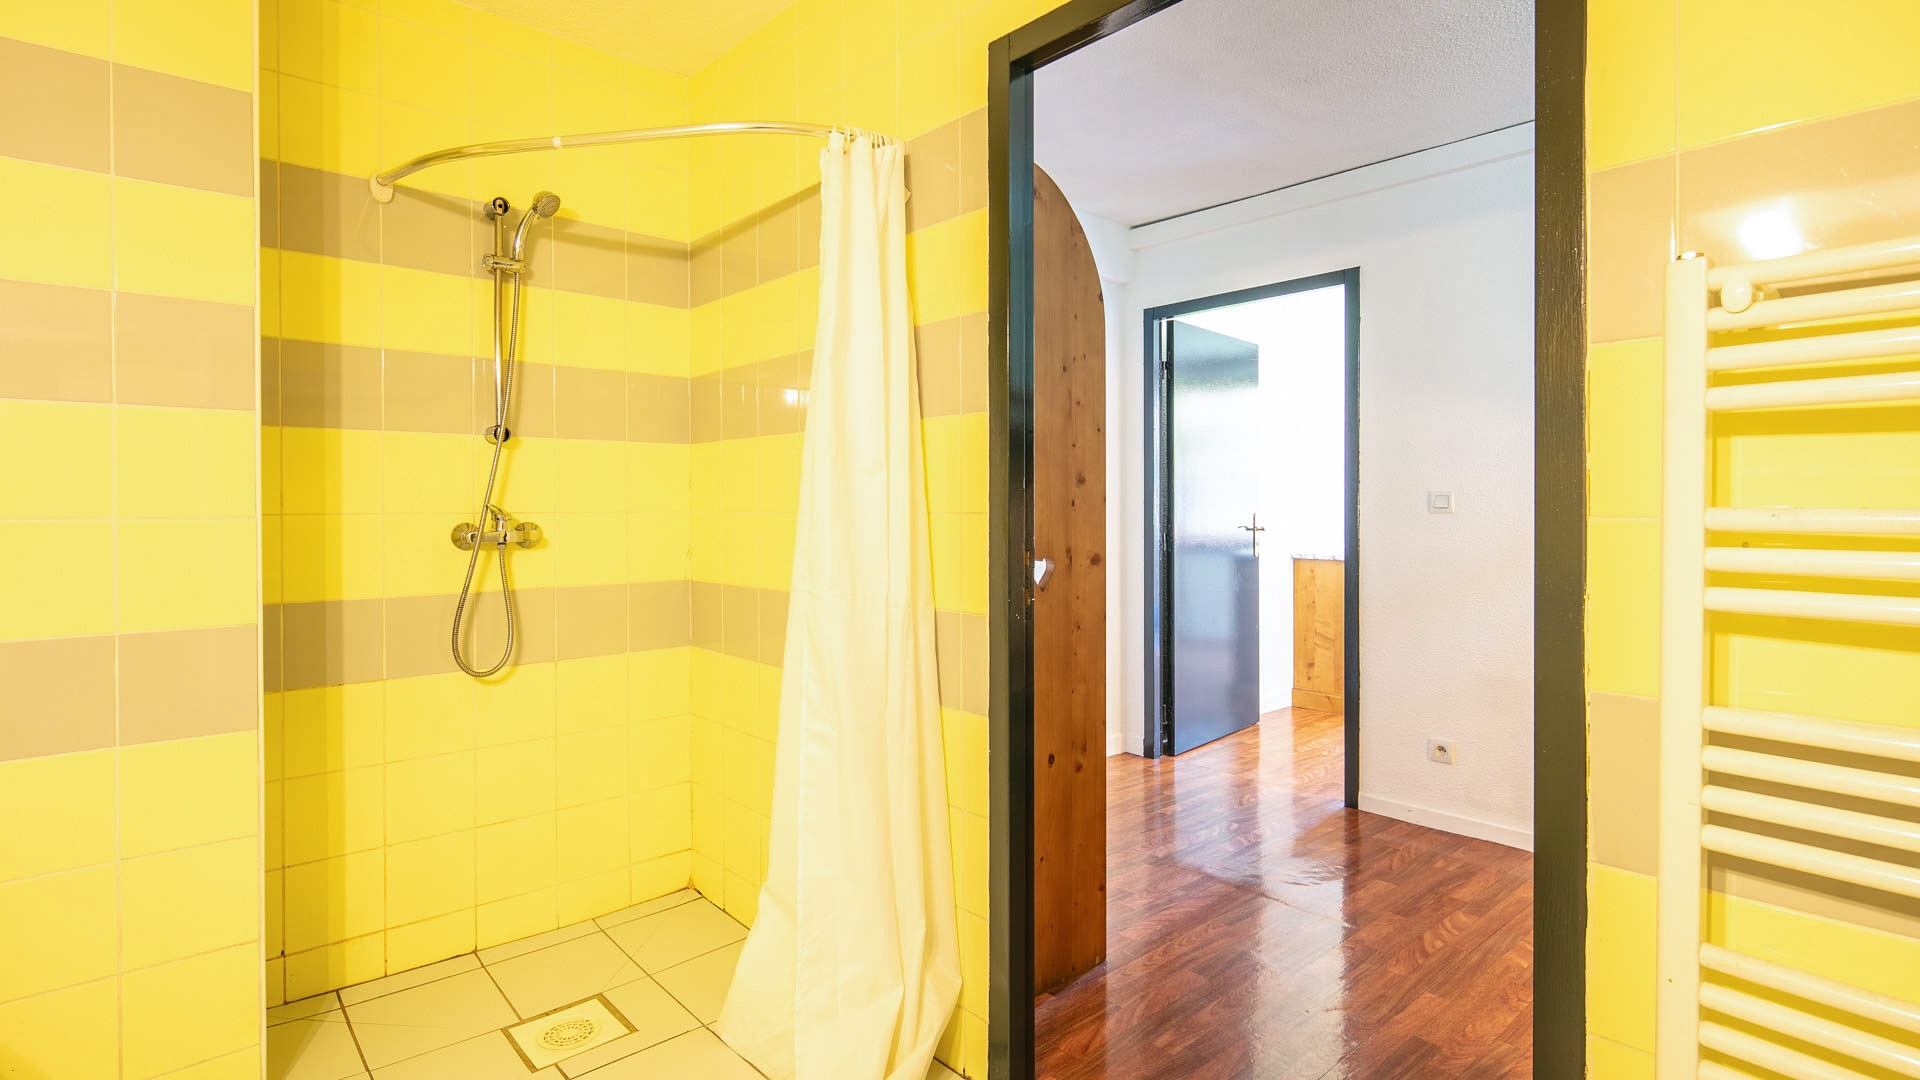 L'Edelweiss in Les 2 Alpes - Appartement für 8 Personen: Badezimmer (Beispiel)